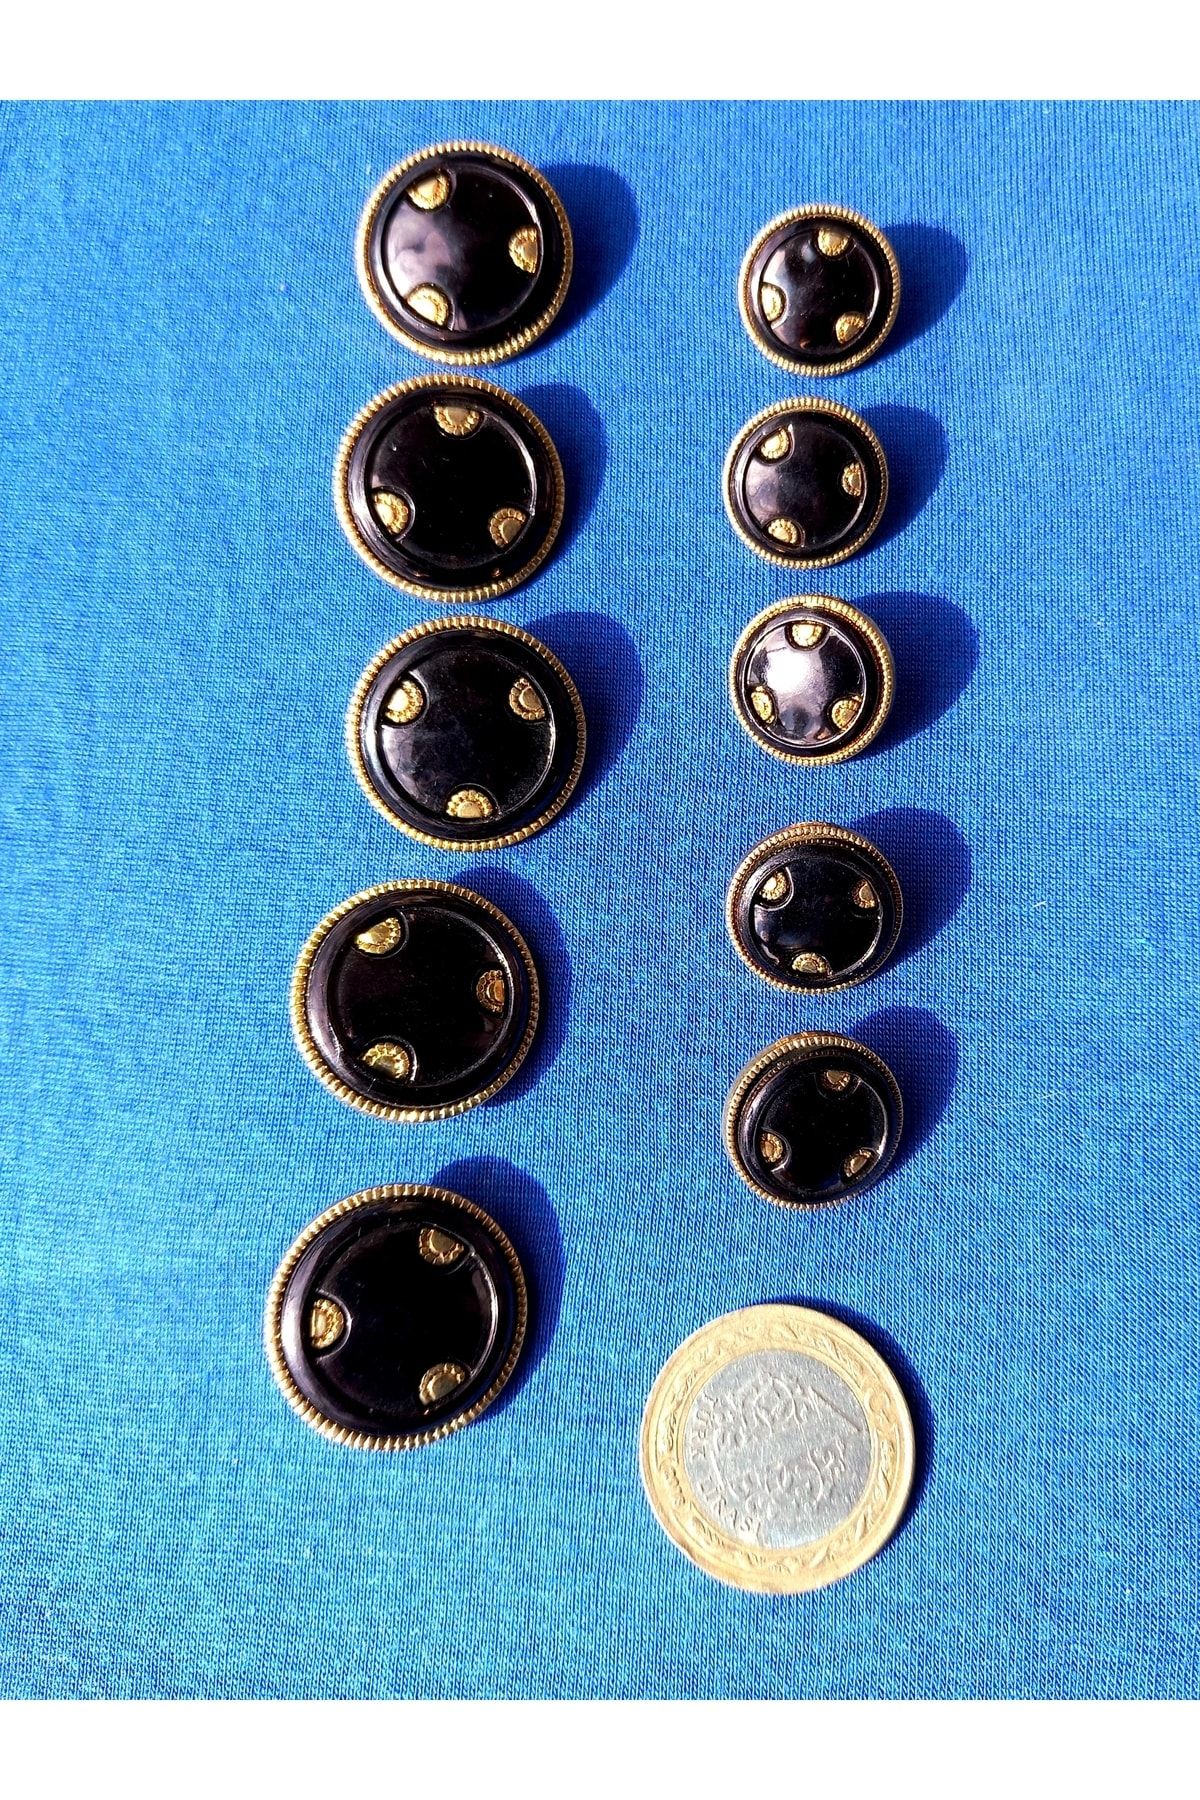 yörük tuhafiye Siyah ,sedef, Gold Metalize Süslemeli ,2,5 Cm Büyük 10 Adet Düğme.kaban, Pardesü,ceket Dügme No.12